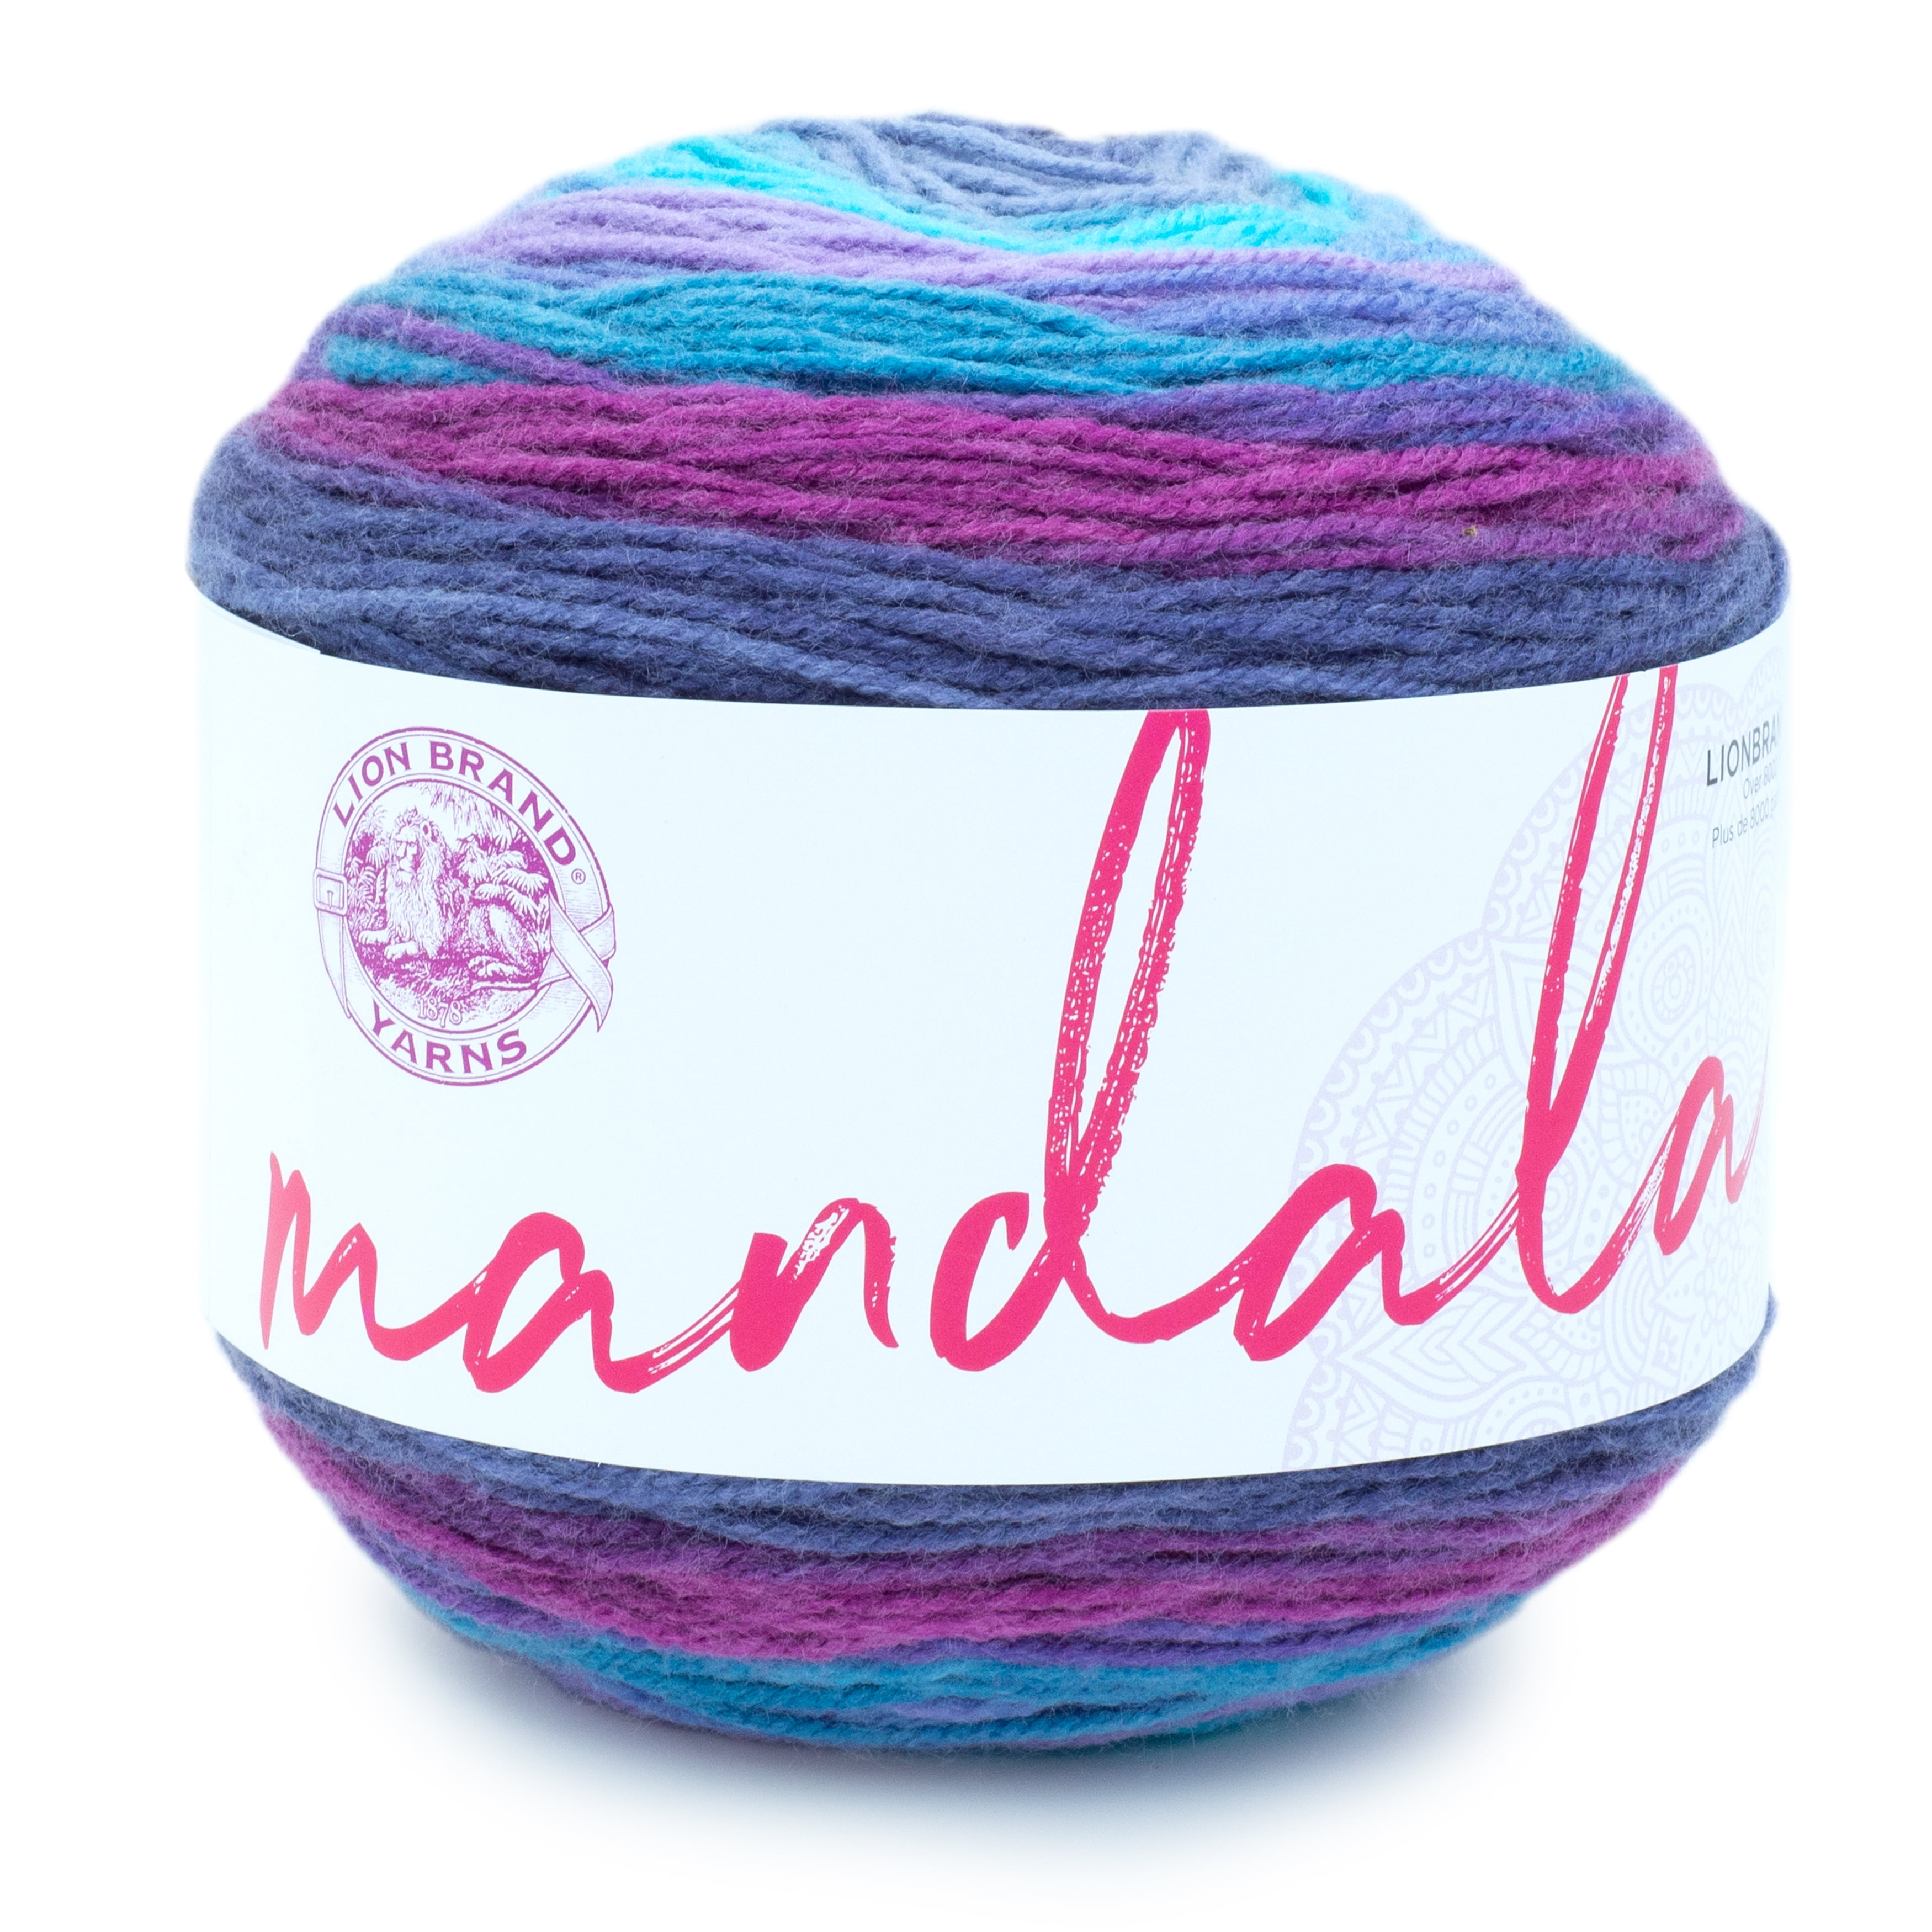 Lion Brand Yarn Mandala Nifflers Self-Striping Light Acrylic Multi